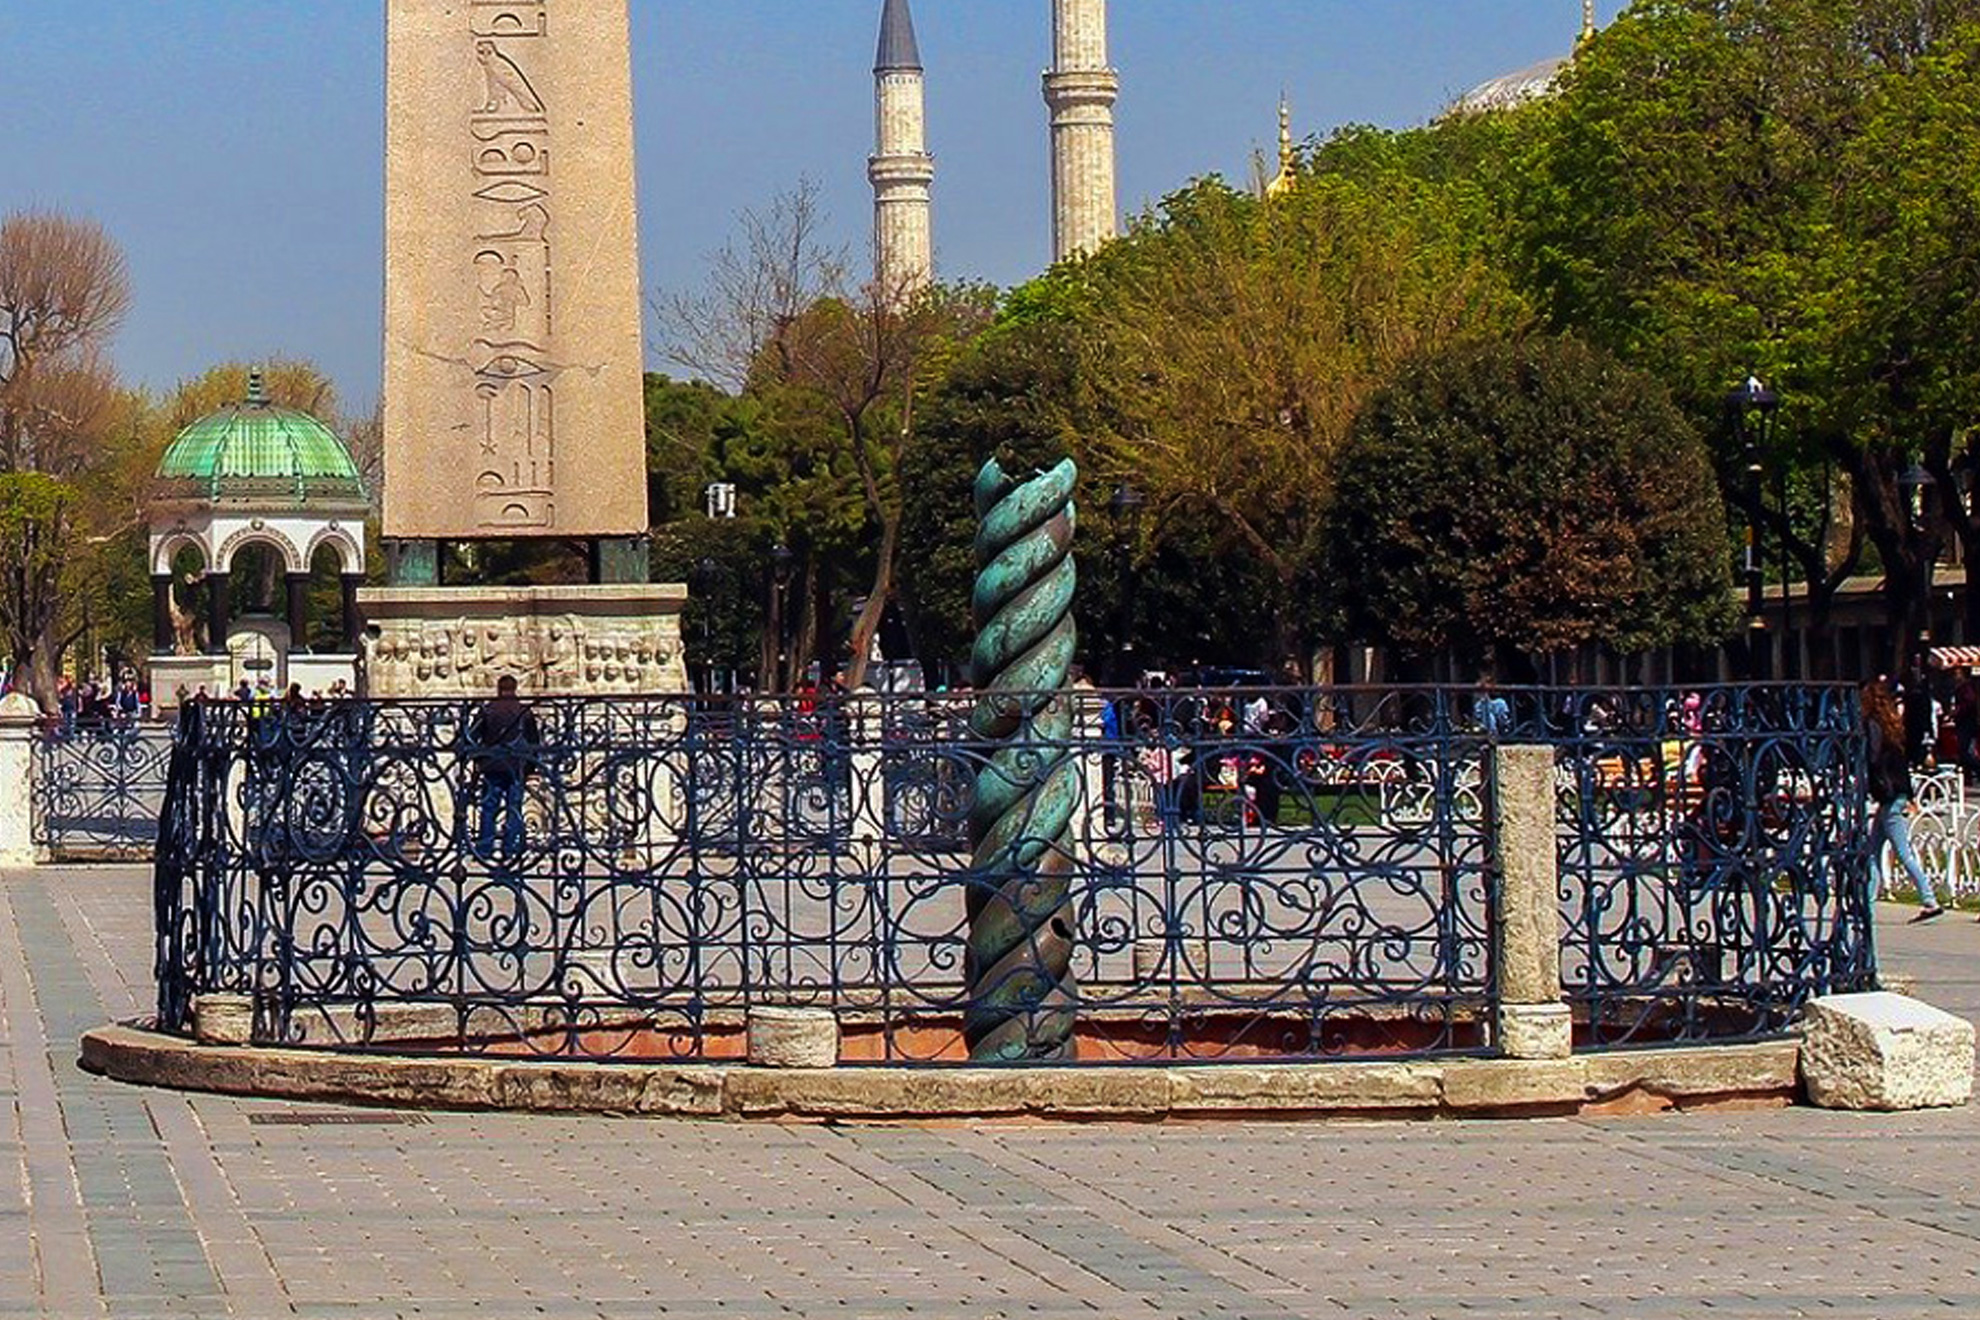 Фестивалът на лалето в Истанбул, 2 нощувки - Змиевидната колона, Истанбул, Турция - "Snake column" or "Serpents column", Istanbul, Turkey